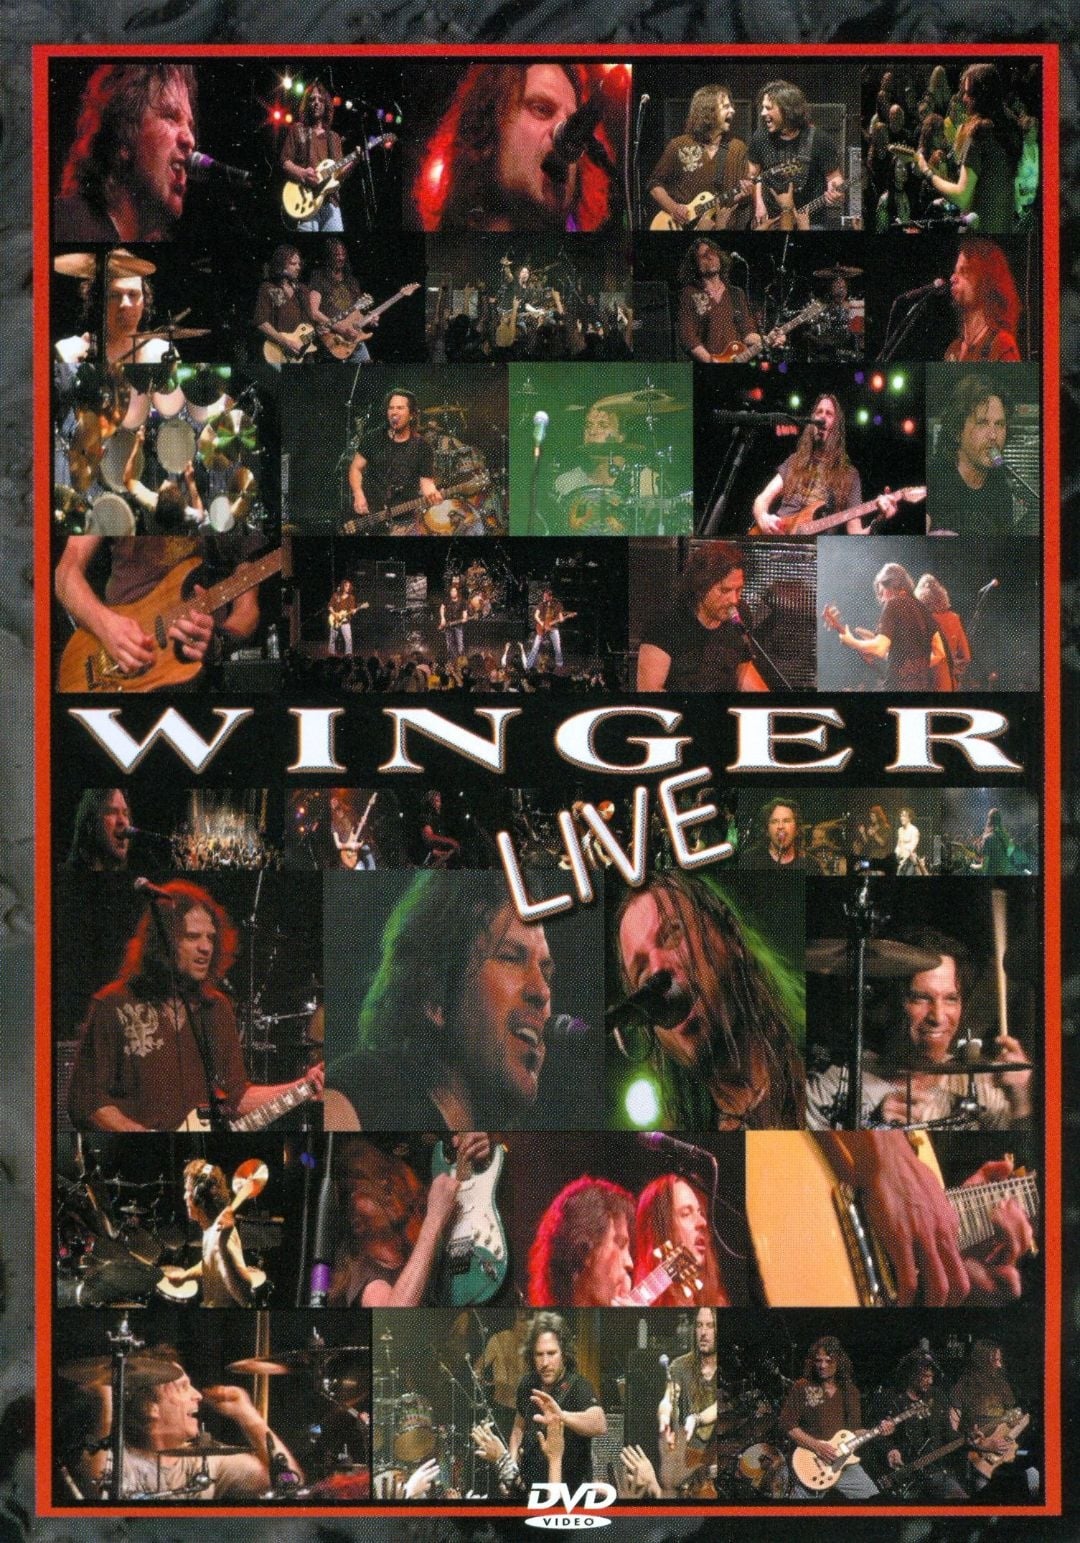 Winger Live